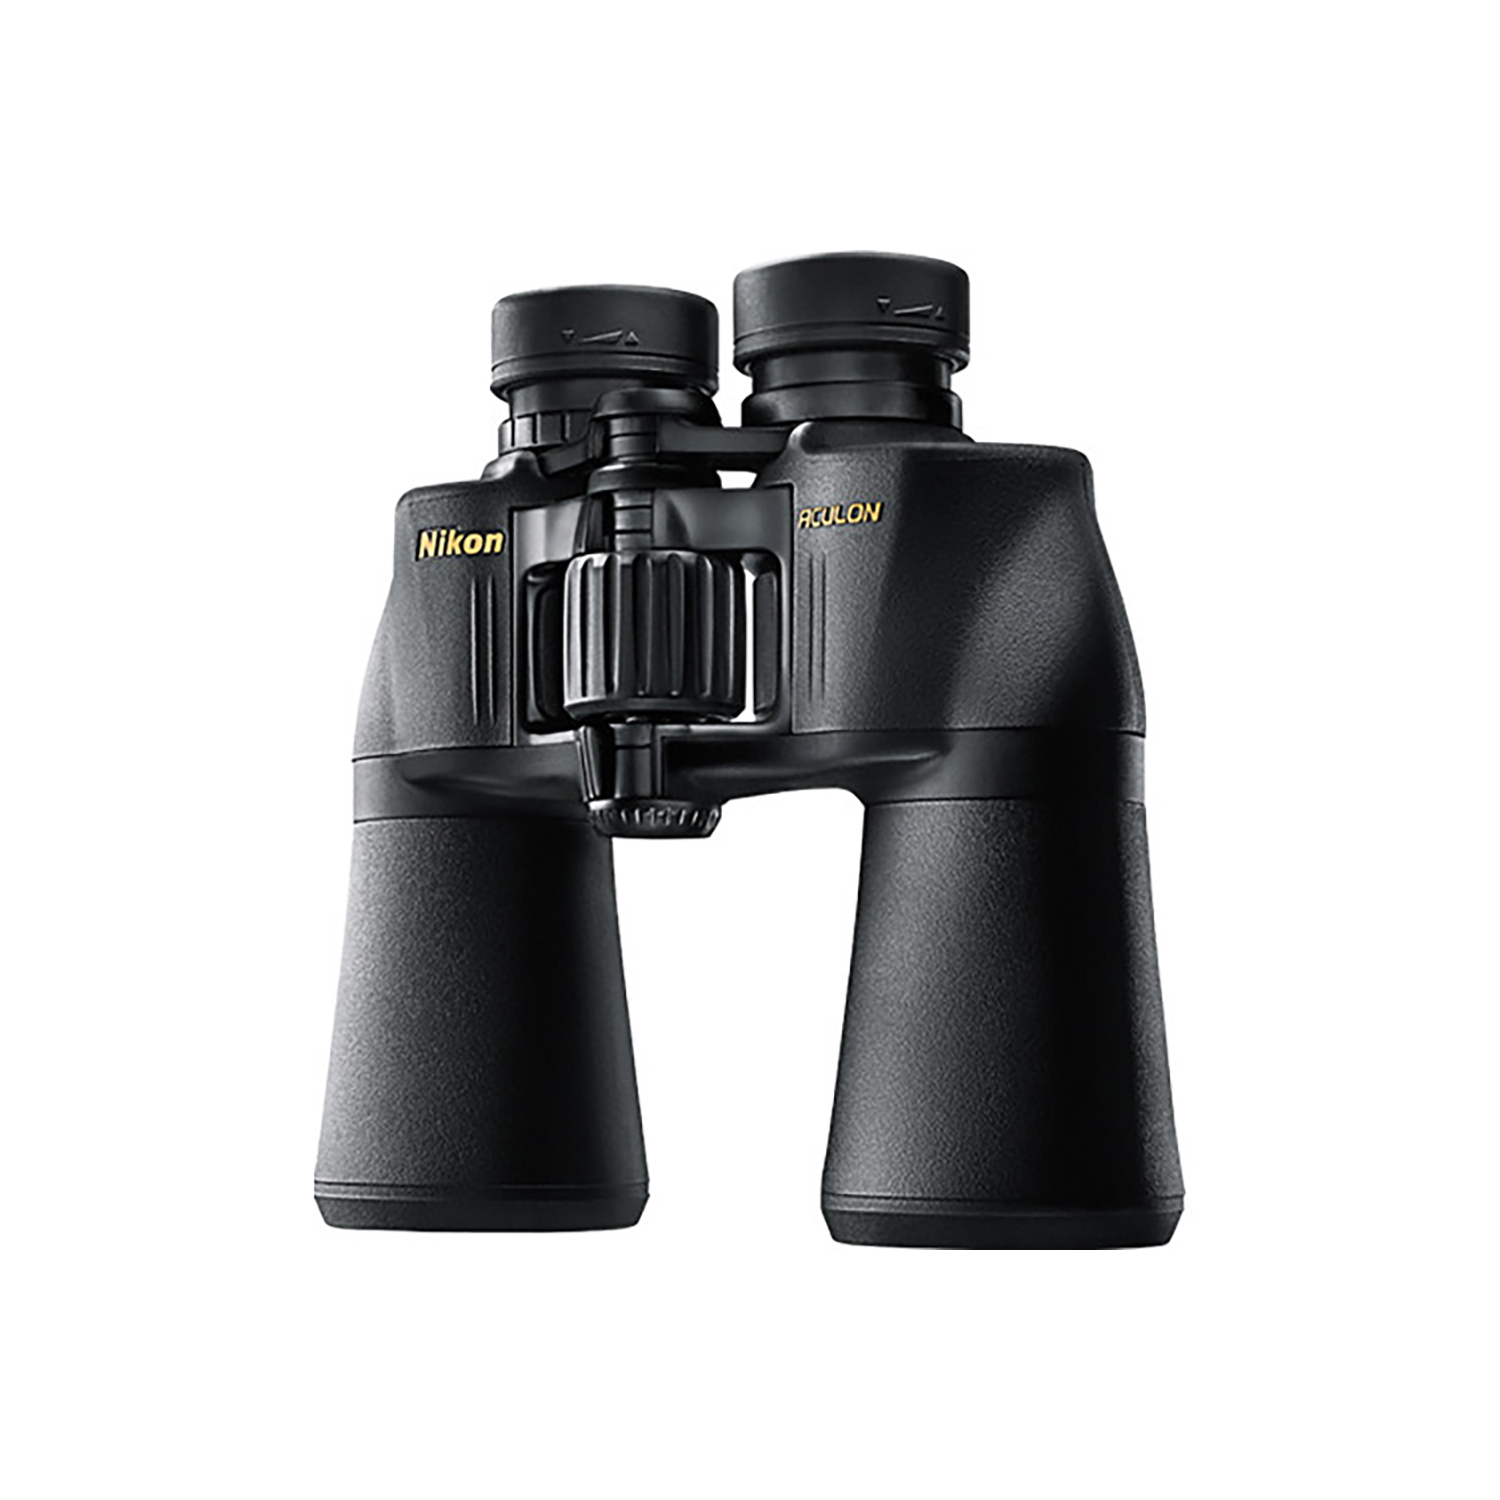 Nikon Aculon A211 Binoculars - 16x50